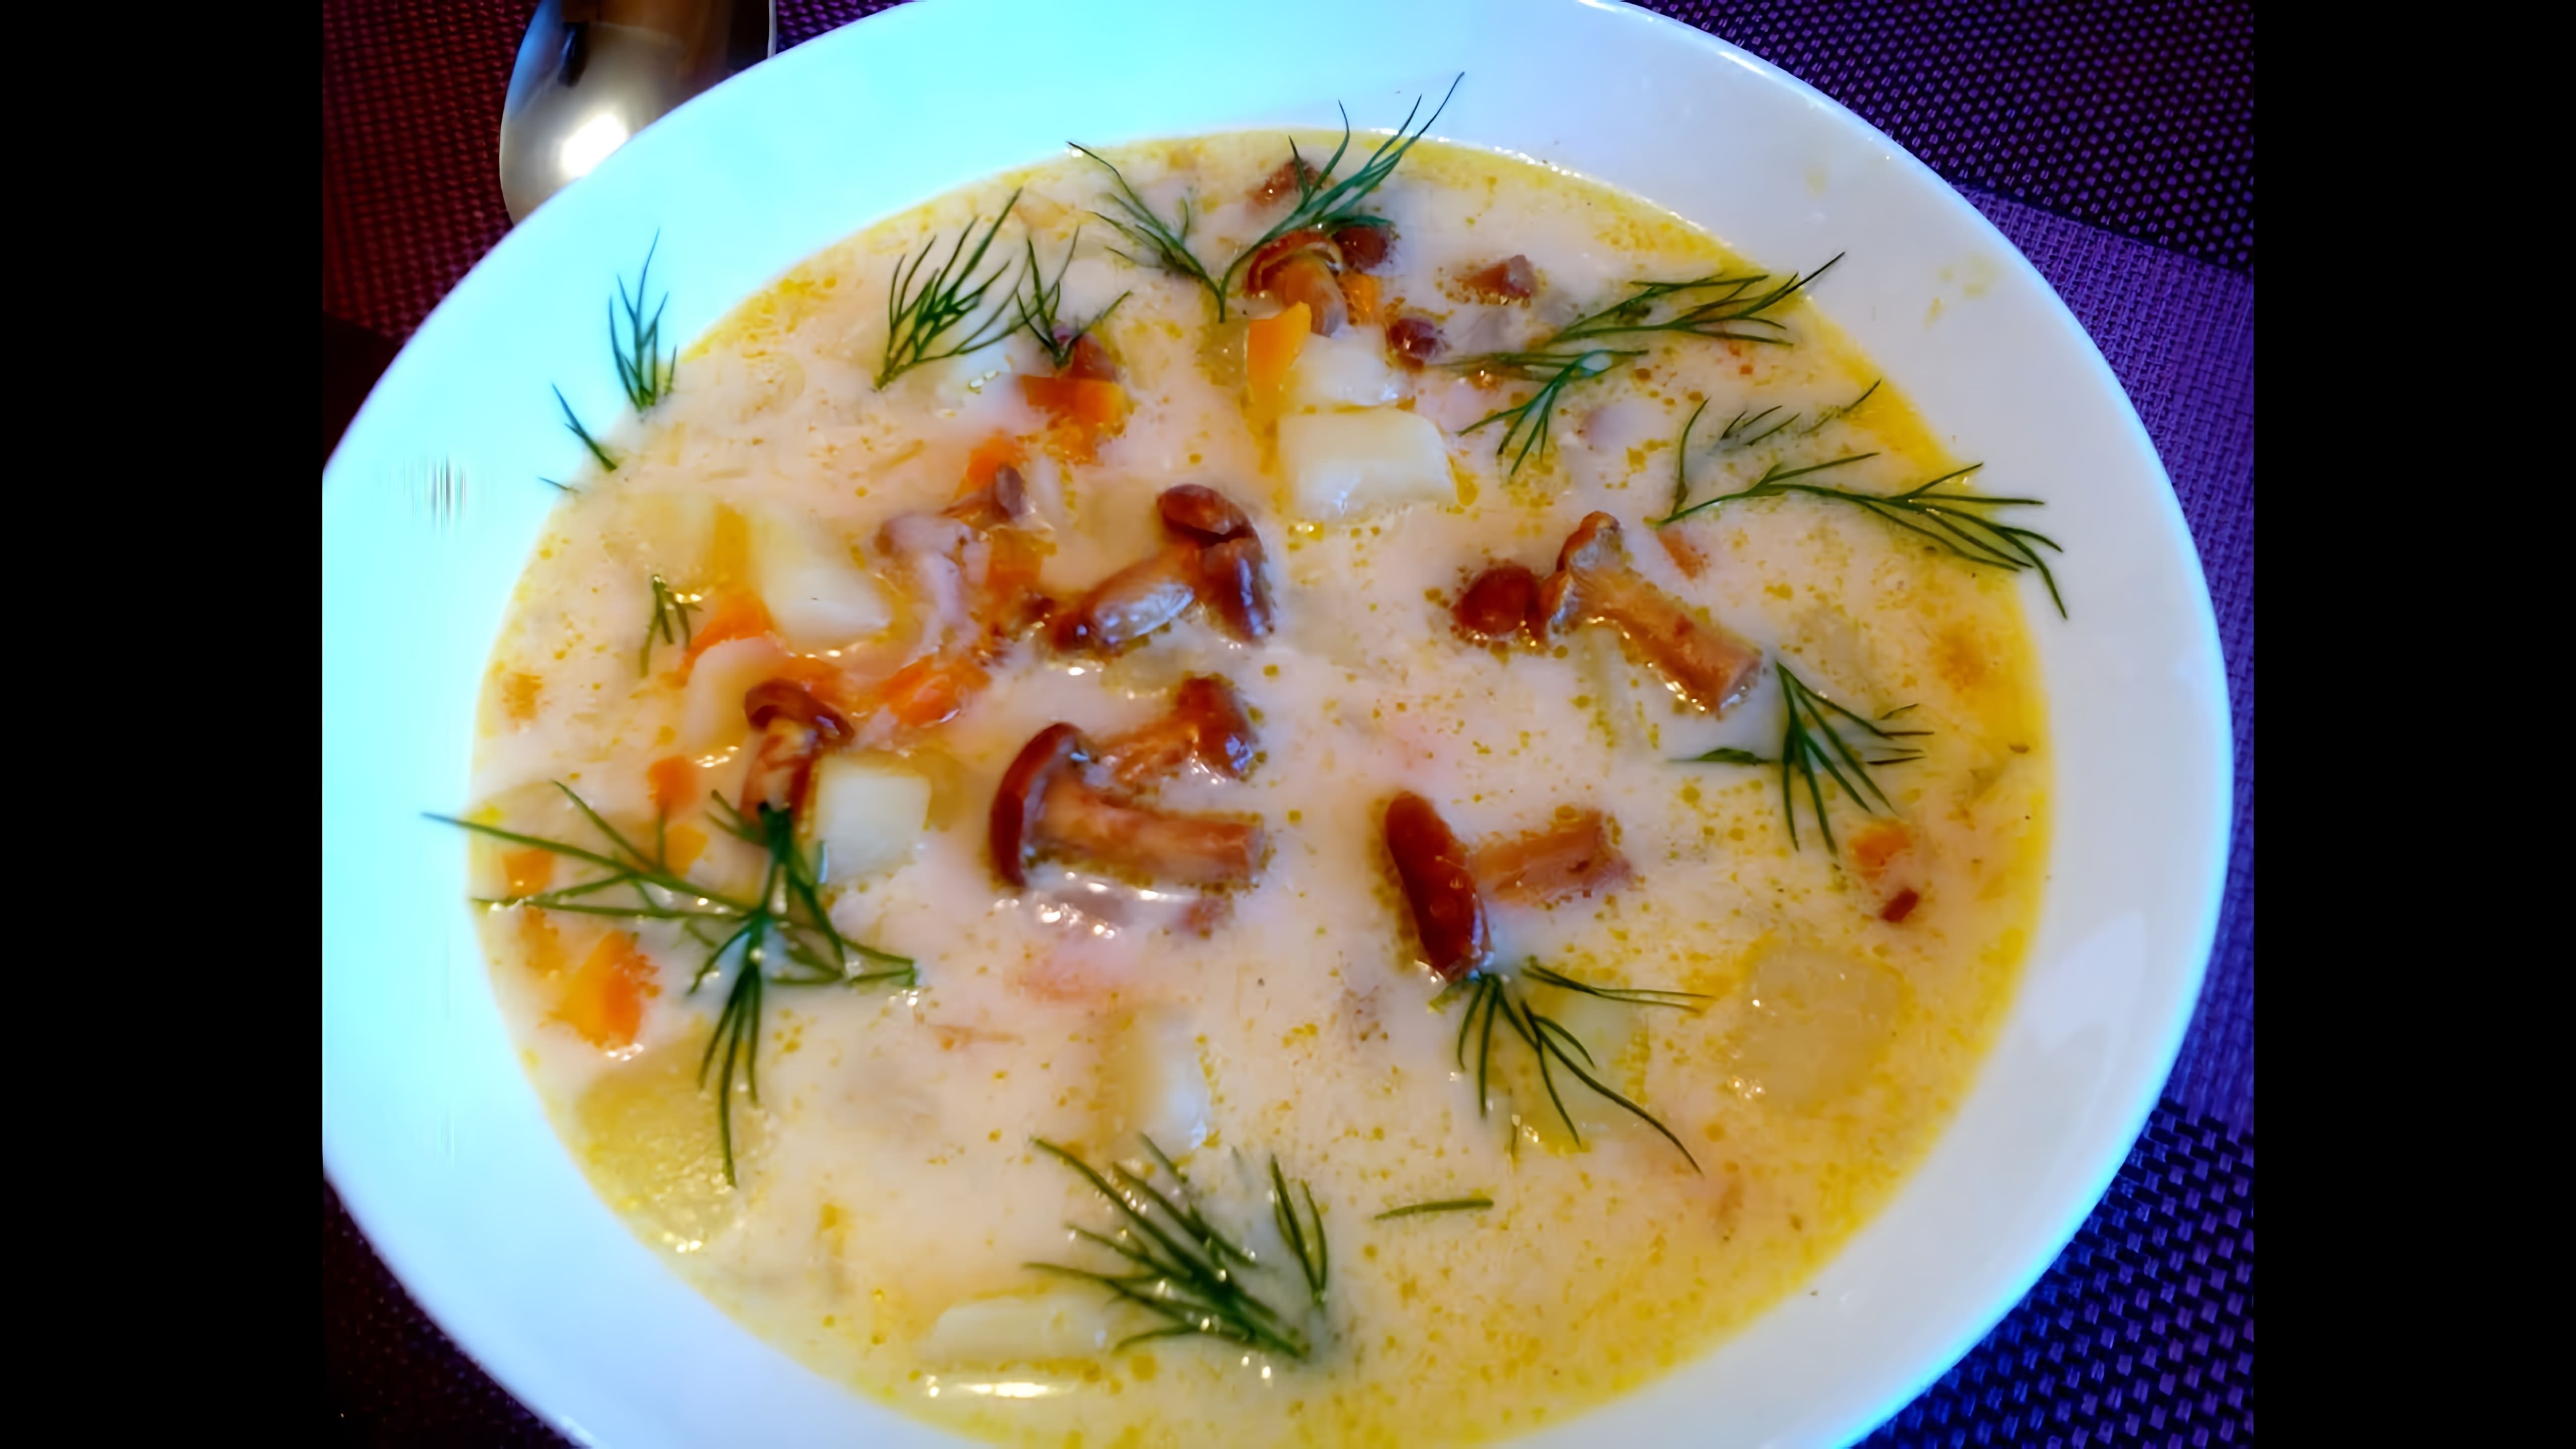 В этом видео демонстрируется рецепт грибного супа с лисичками и плавленым сыром